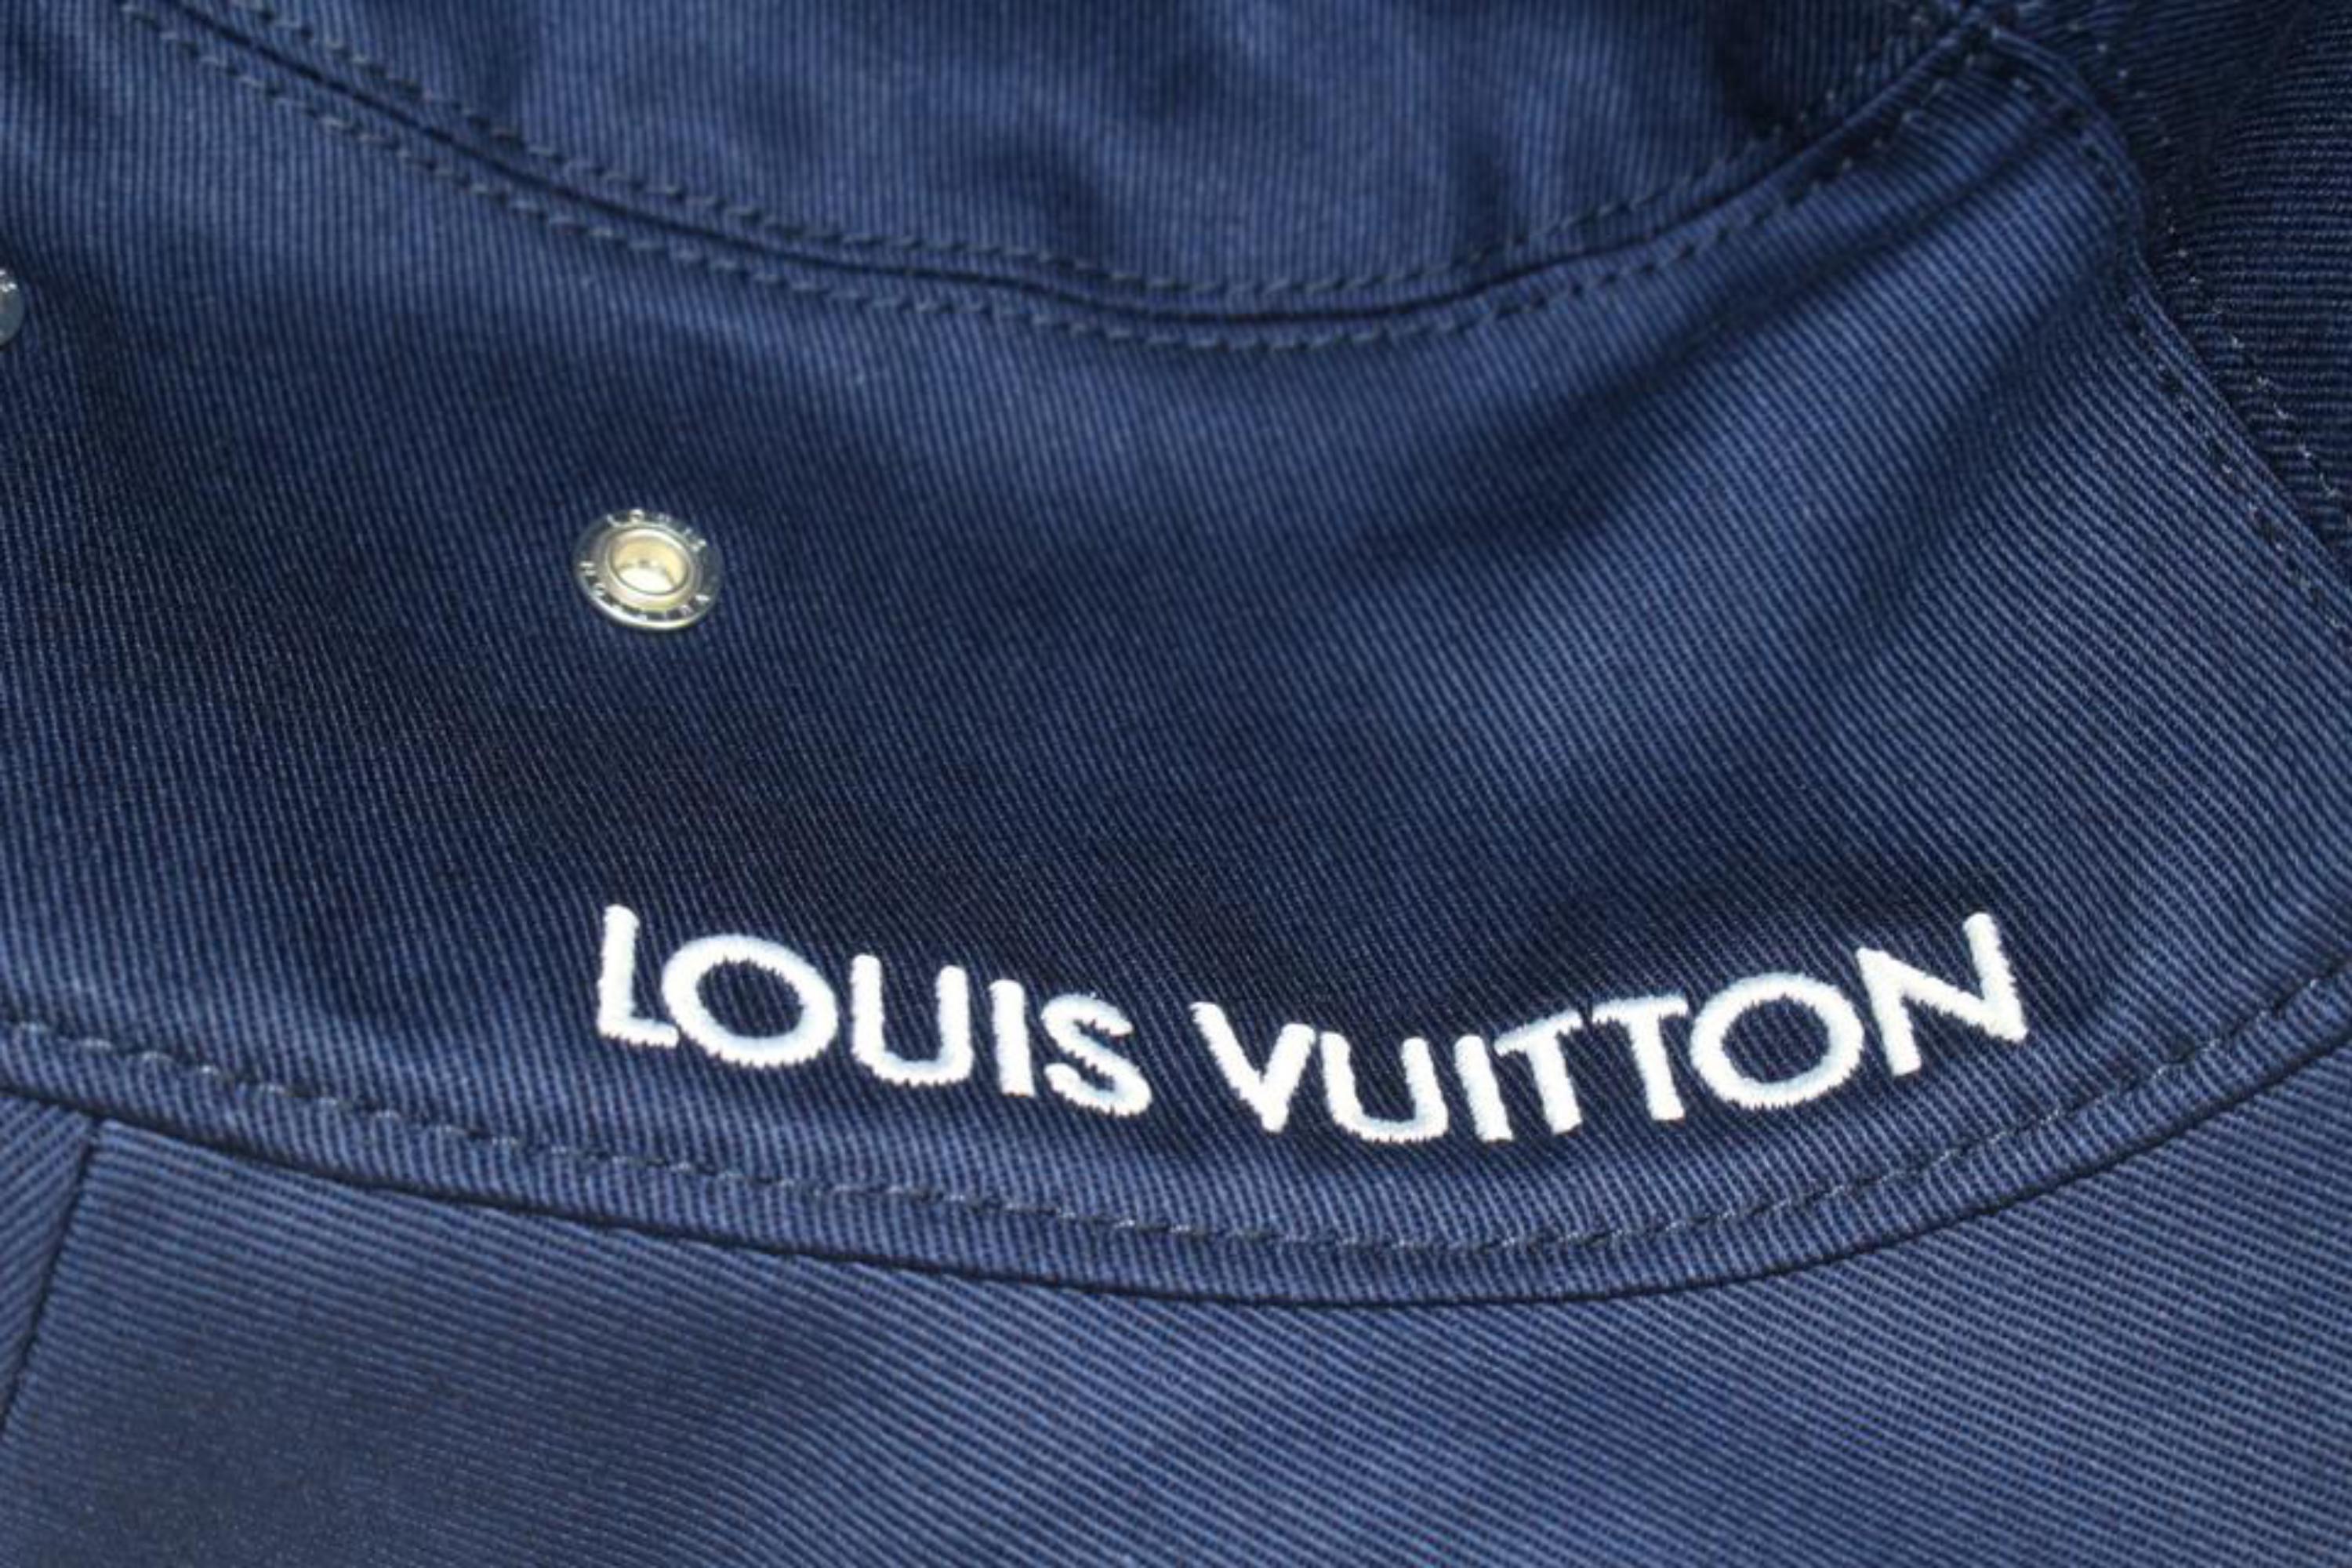 Louis Vuitton Large Size 60 Blue Monogram Bandana Bucket Hat Fisherman 10lk531s 1